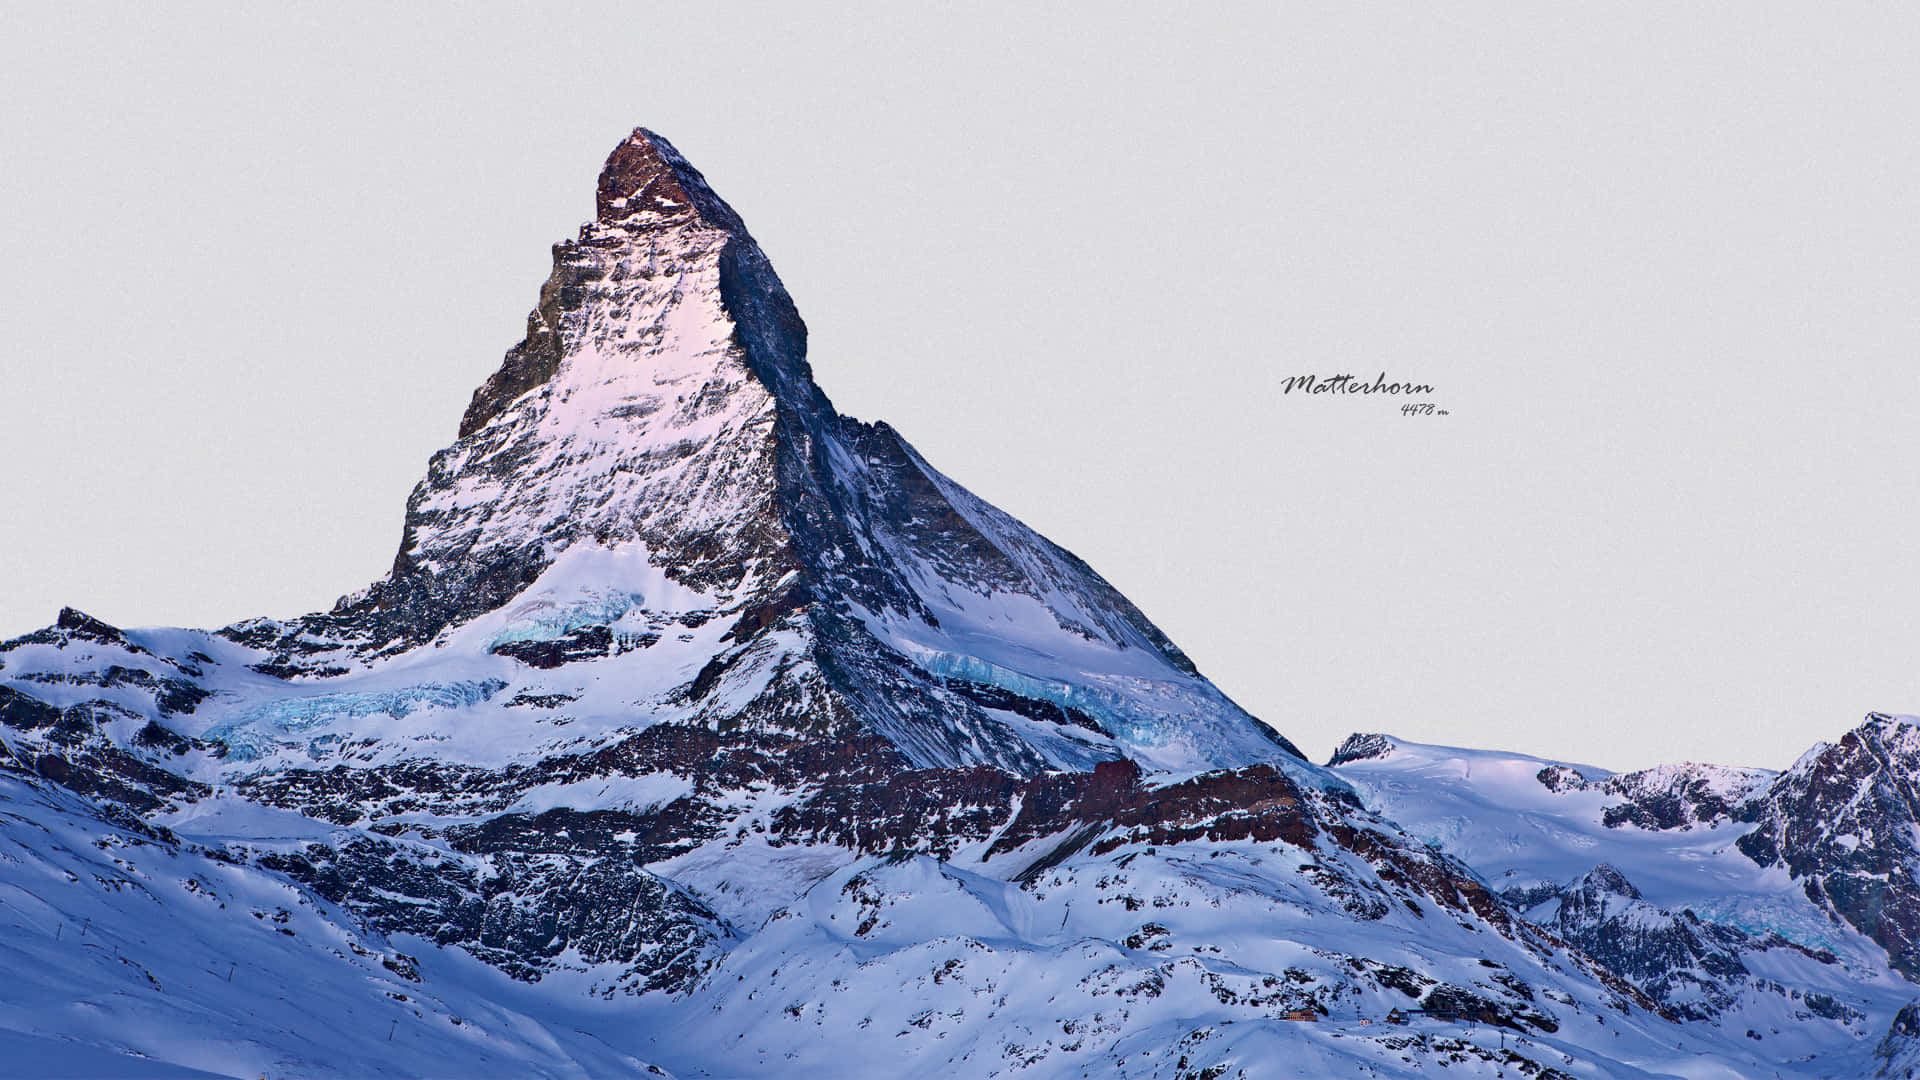 Matterhorn 1920 X 1080 Wallpaper